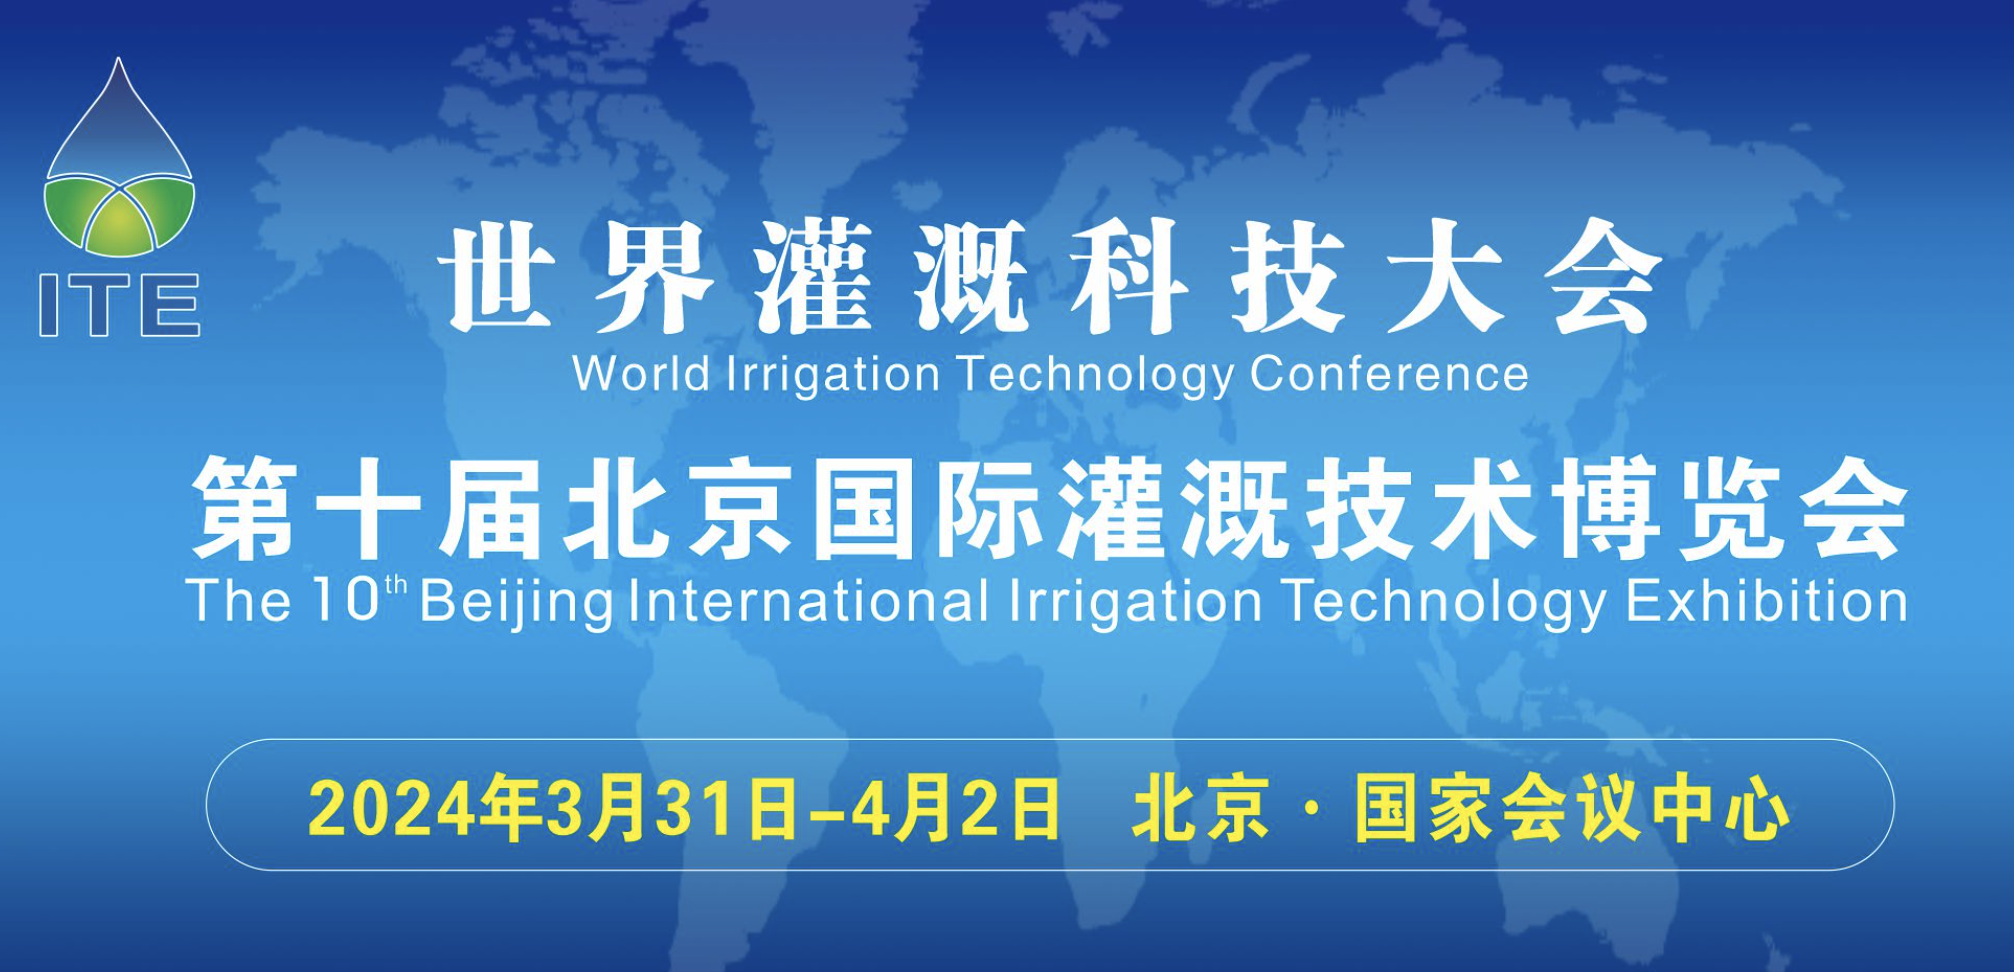 【邀请函】庆诚灌溉邀您参加第十届北京国际灌溉技术博览会